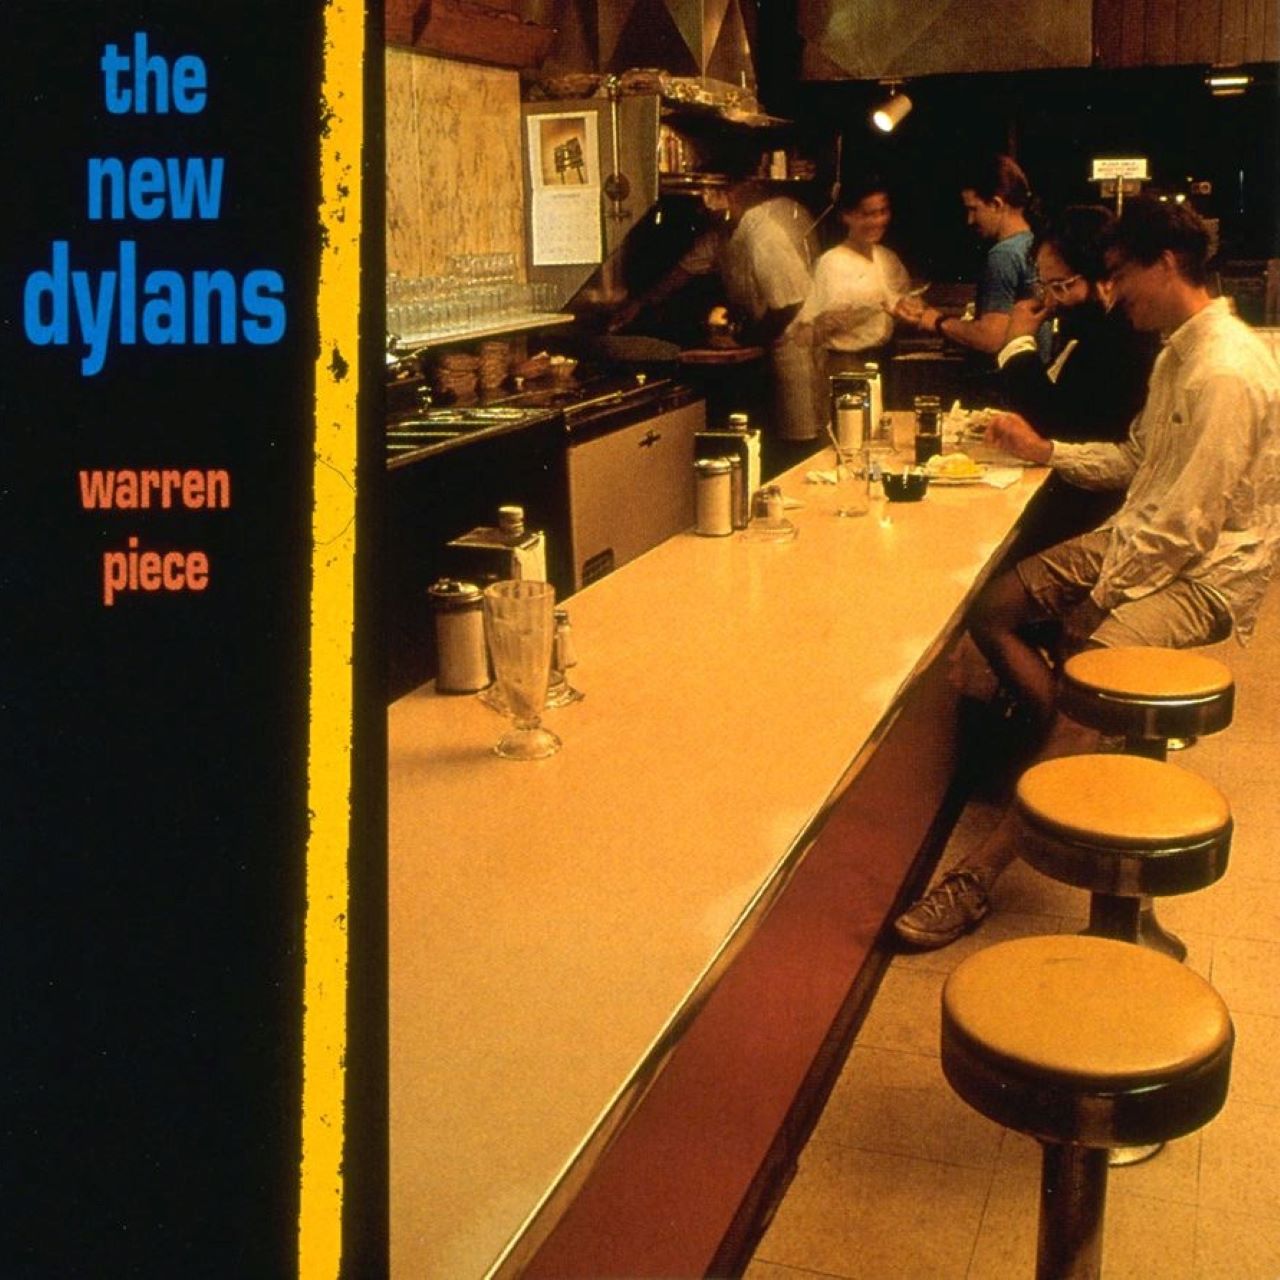 New Dylans – Warren Piece cover album